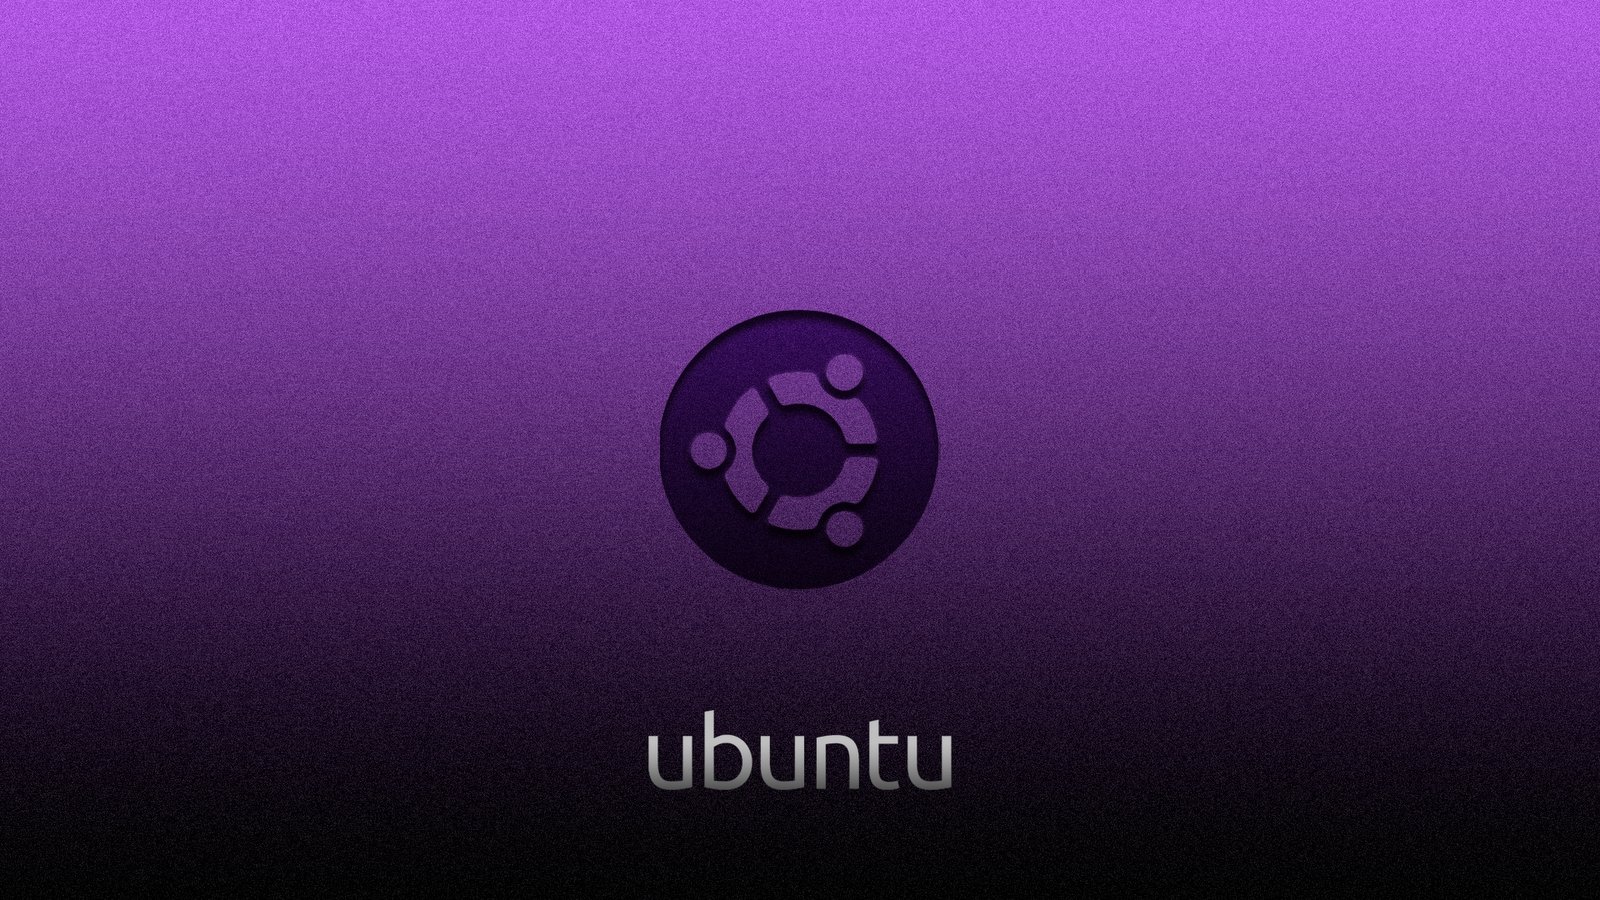 Ubuntu logo roxo